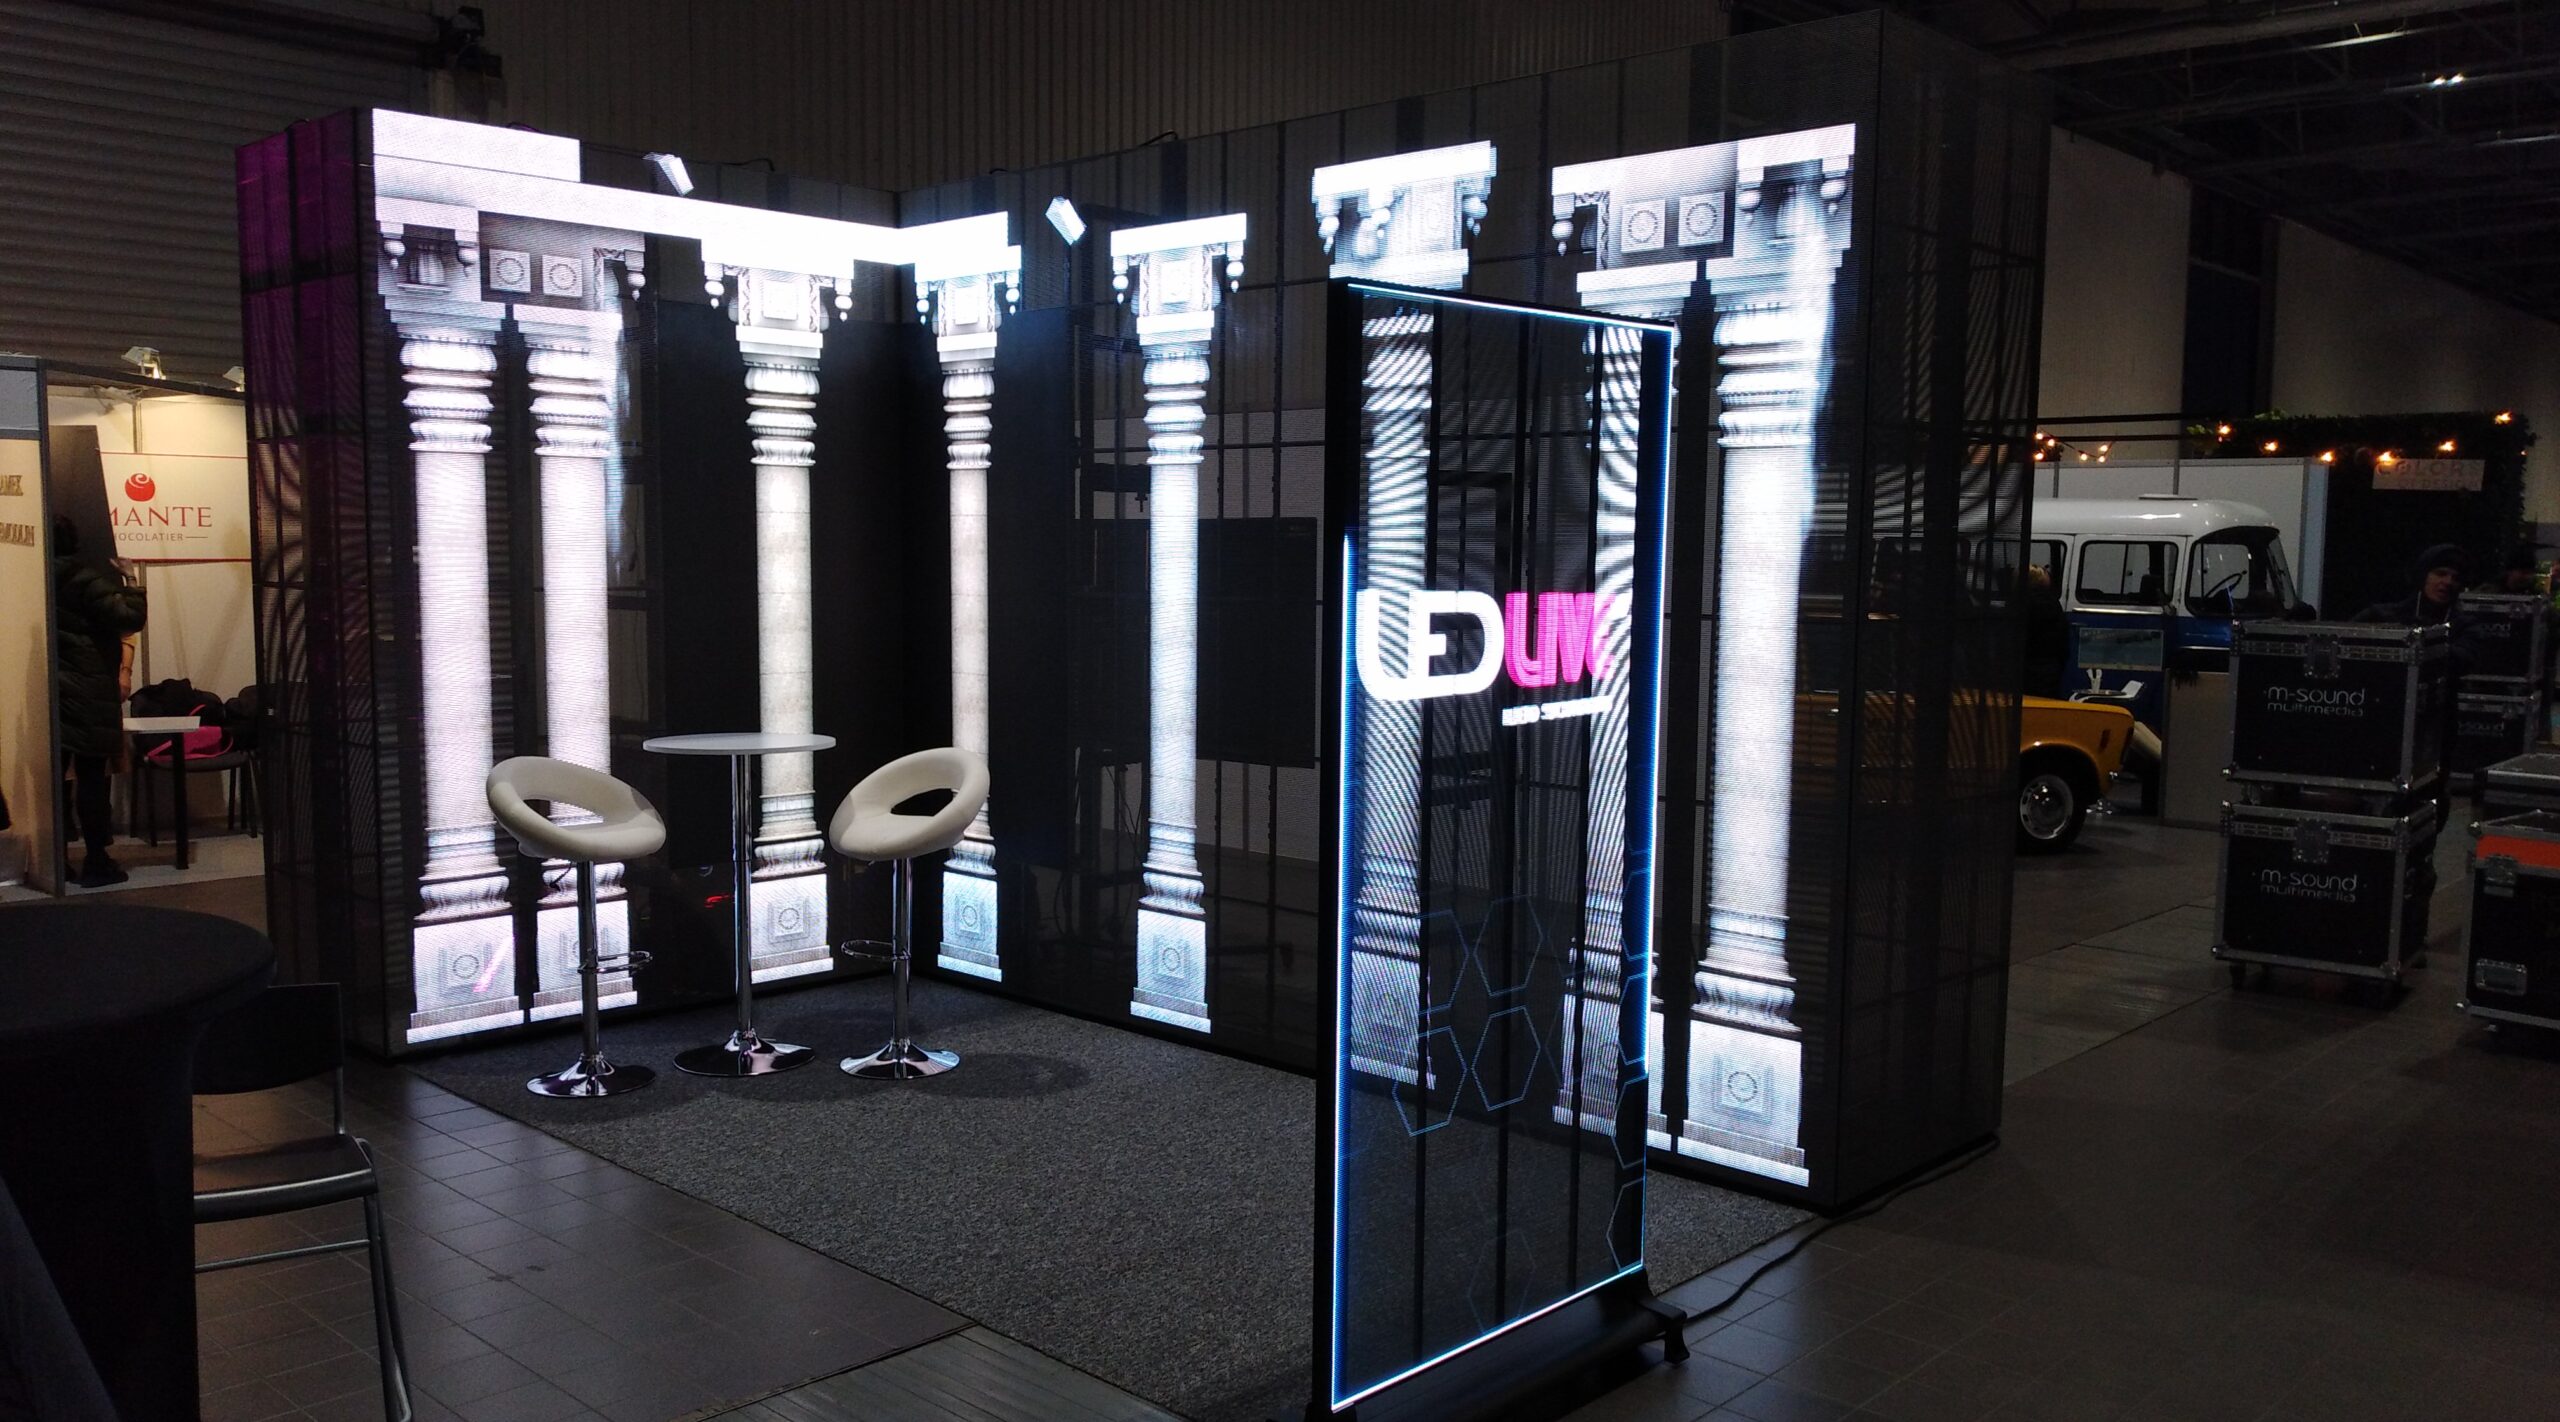 Stoisko ekspozycyjne w formie narożnika zbudowane z transparentnych ekranów LED podczas Forum Branży Eventowej 2021 w Warszawie